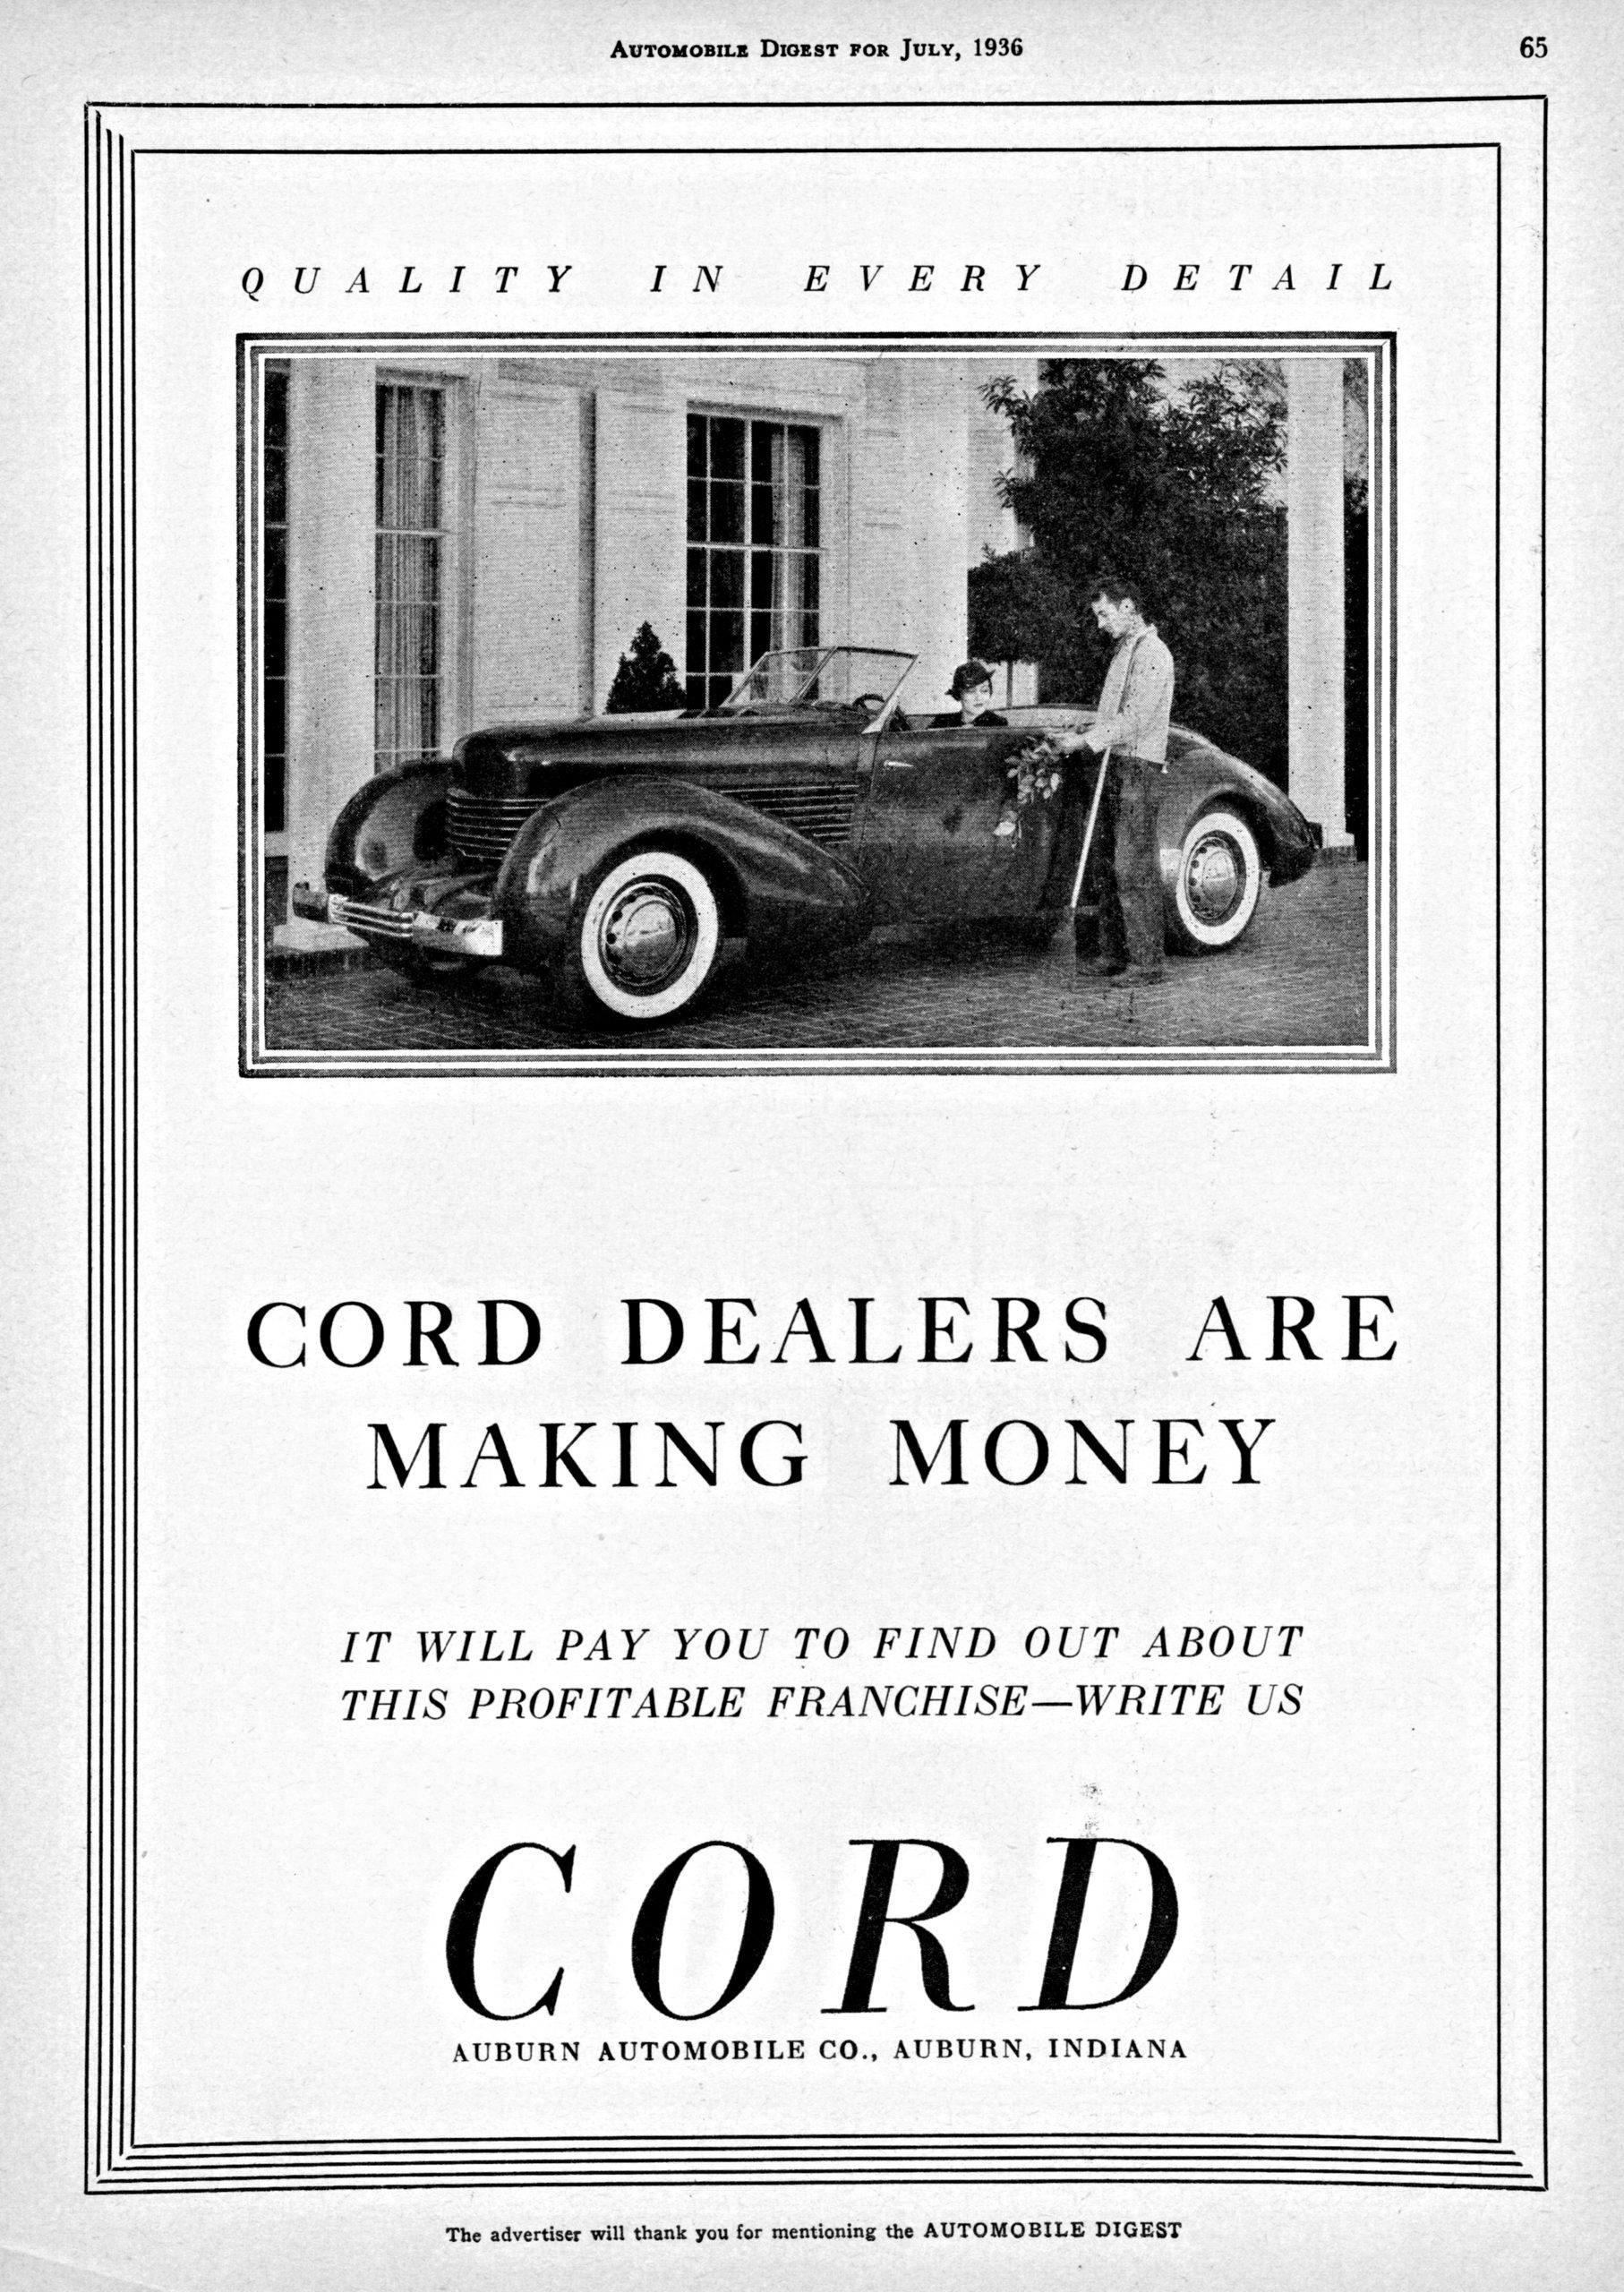 Cord 810 brochure 1936 vintage ad